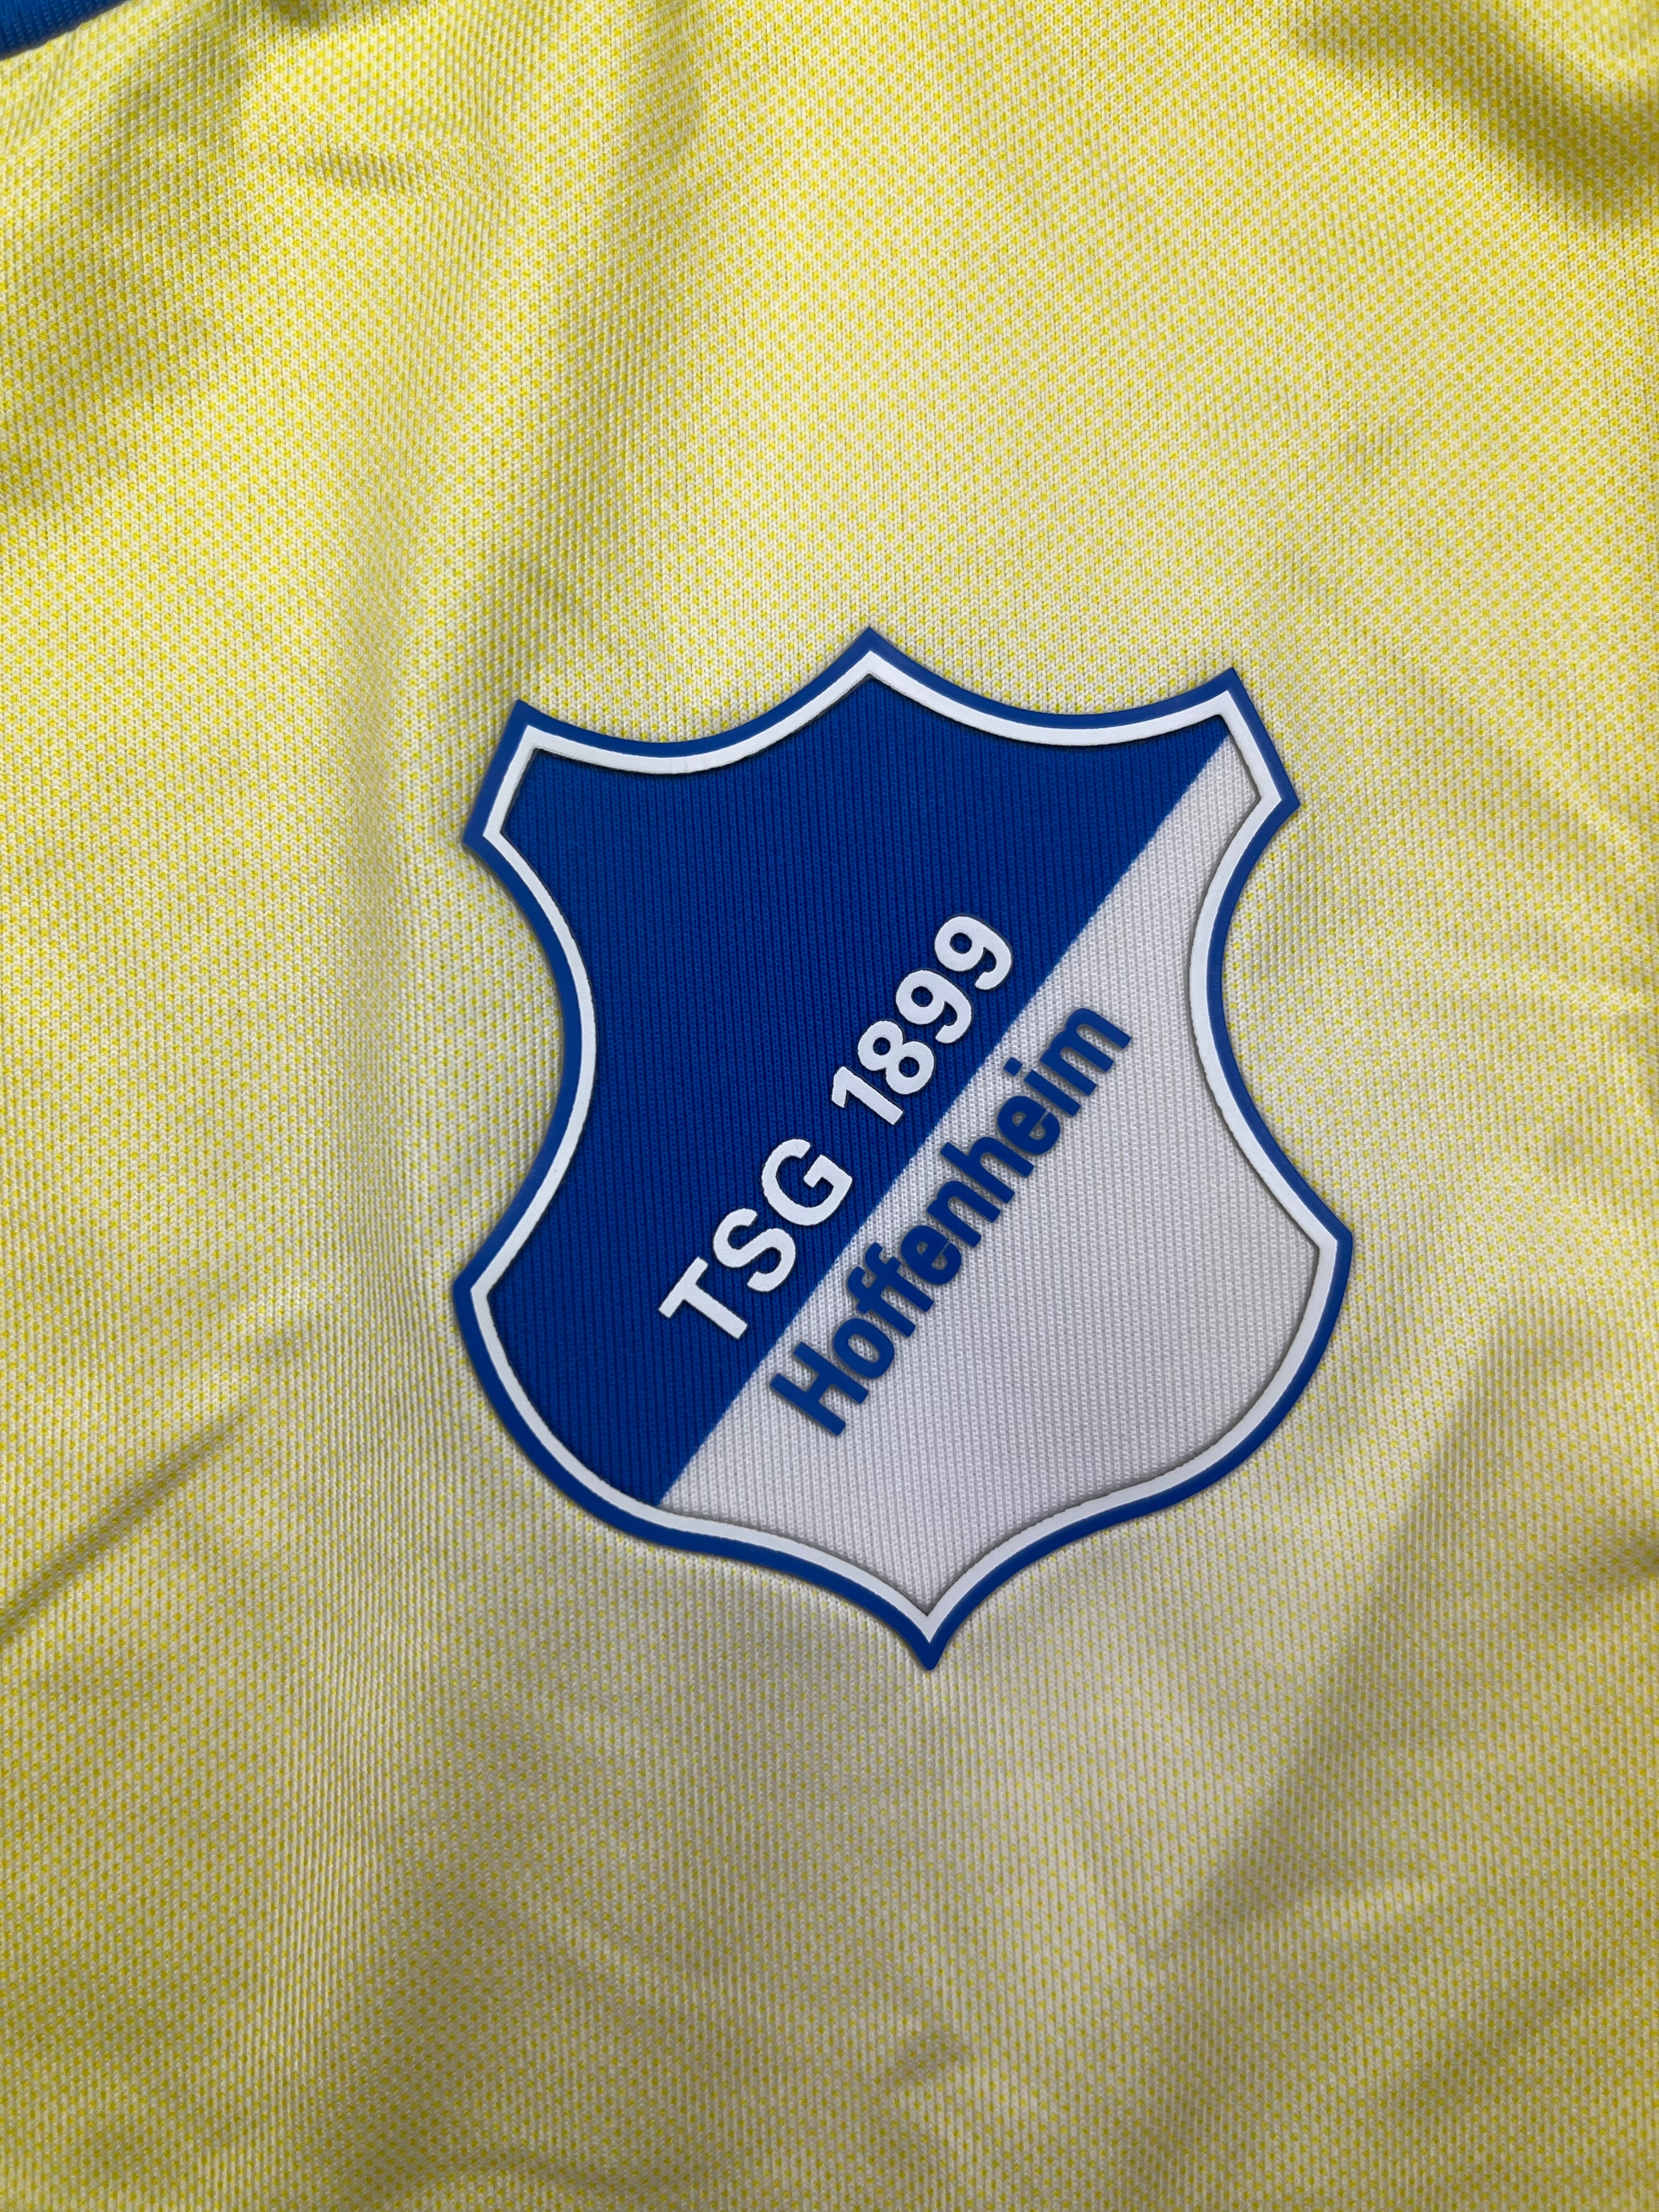 2015/16 Hoffenheim Away Shirt (XXL) BNWT